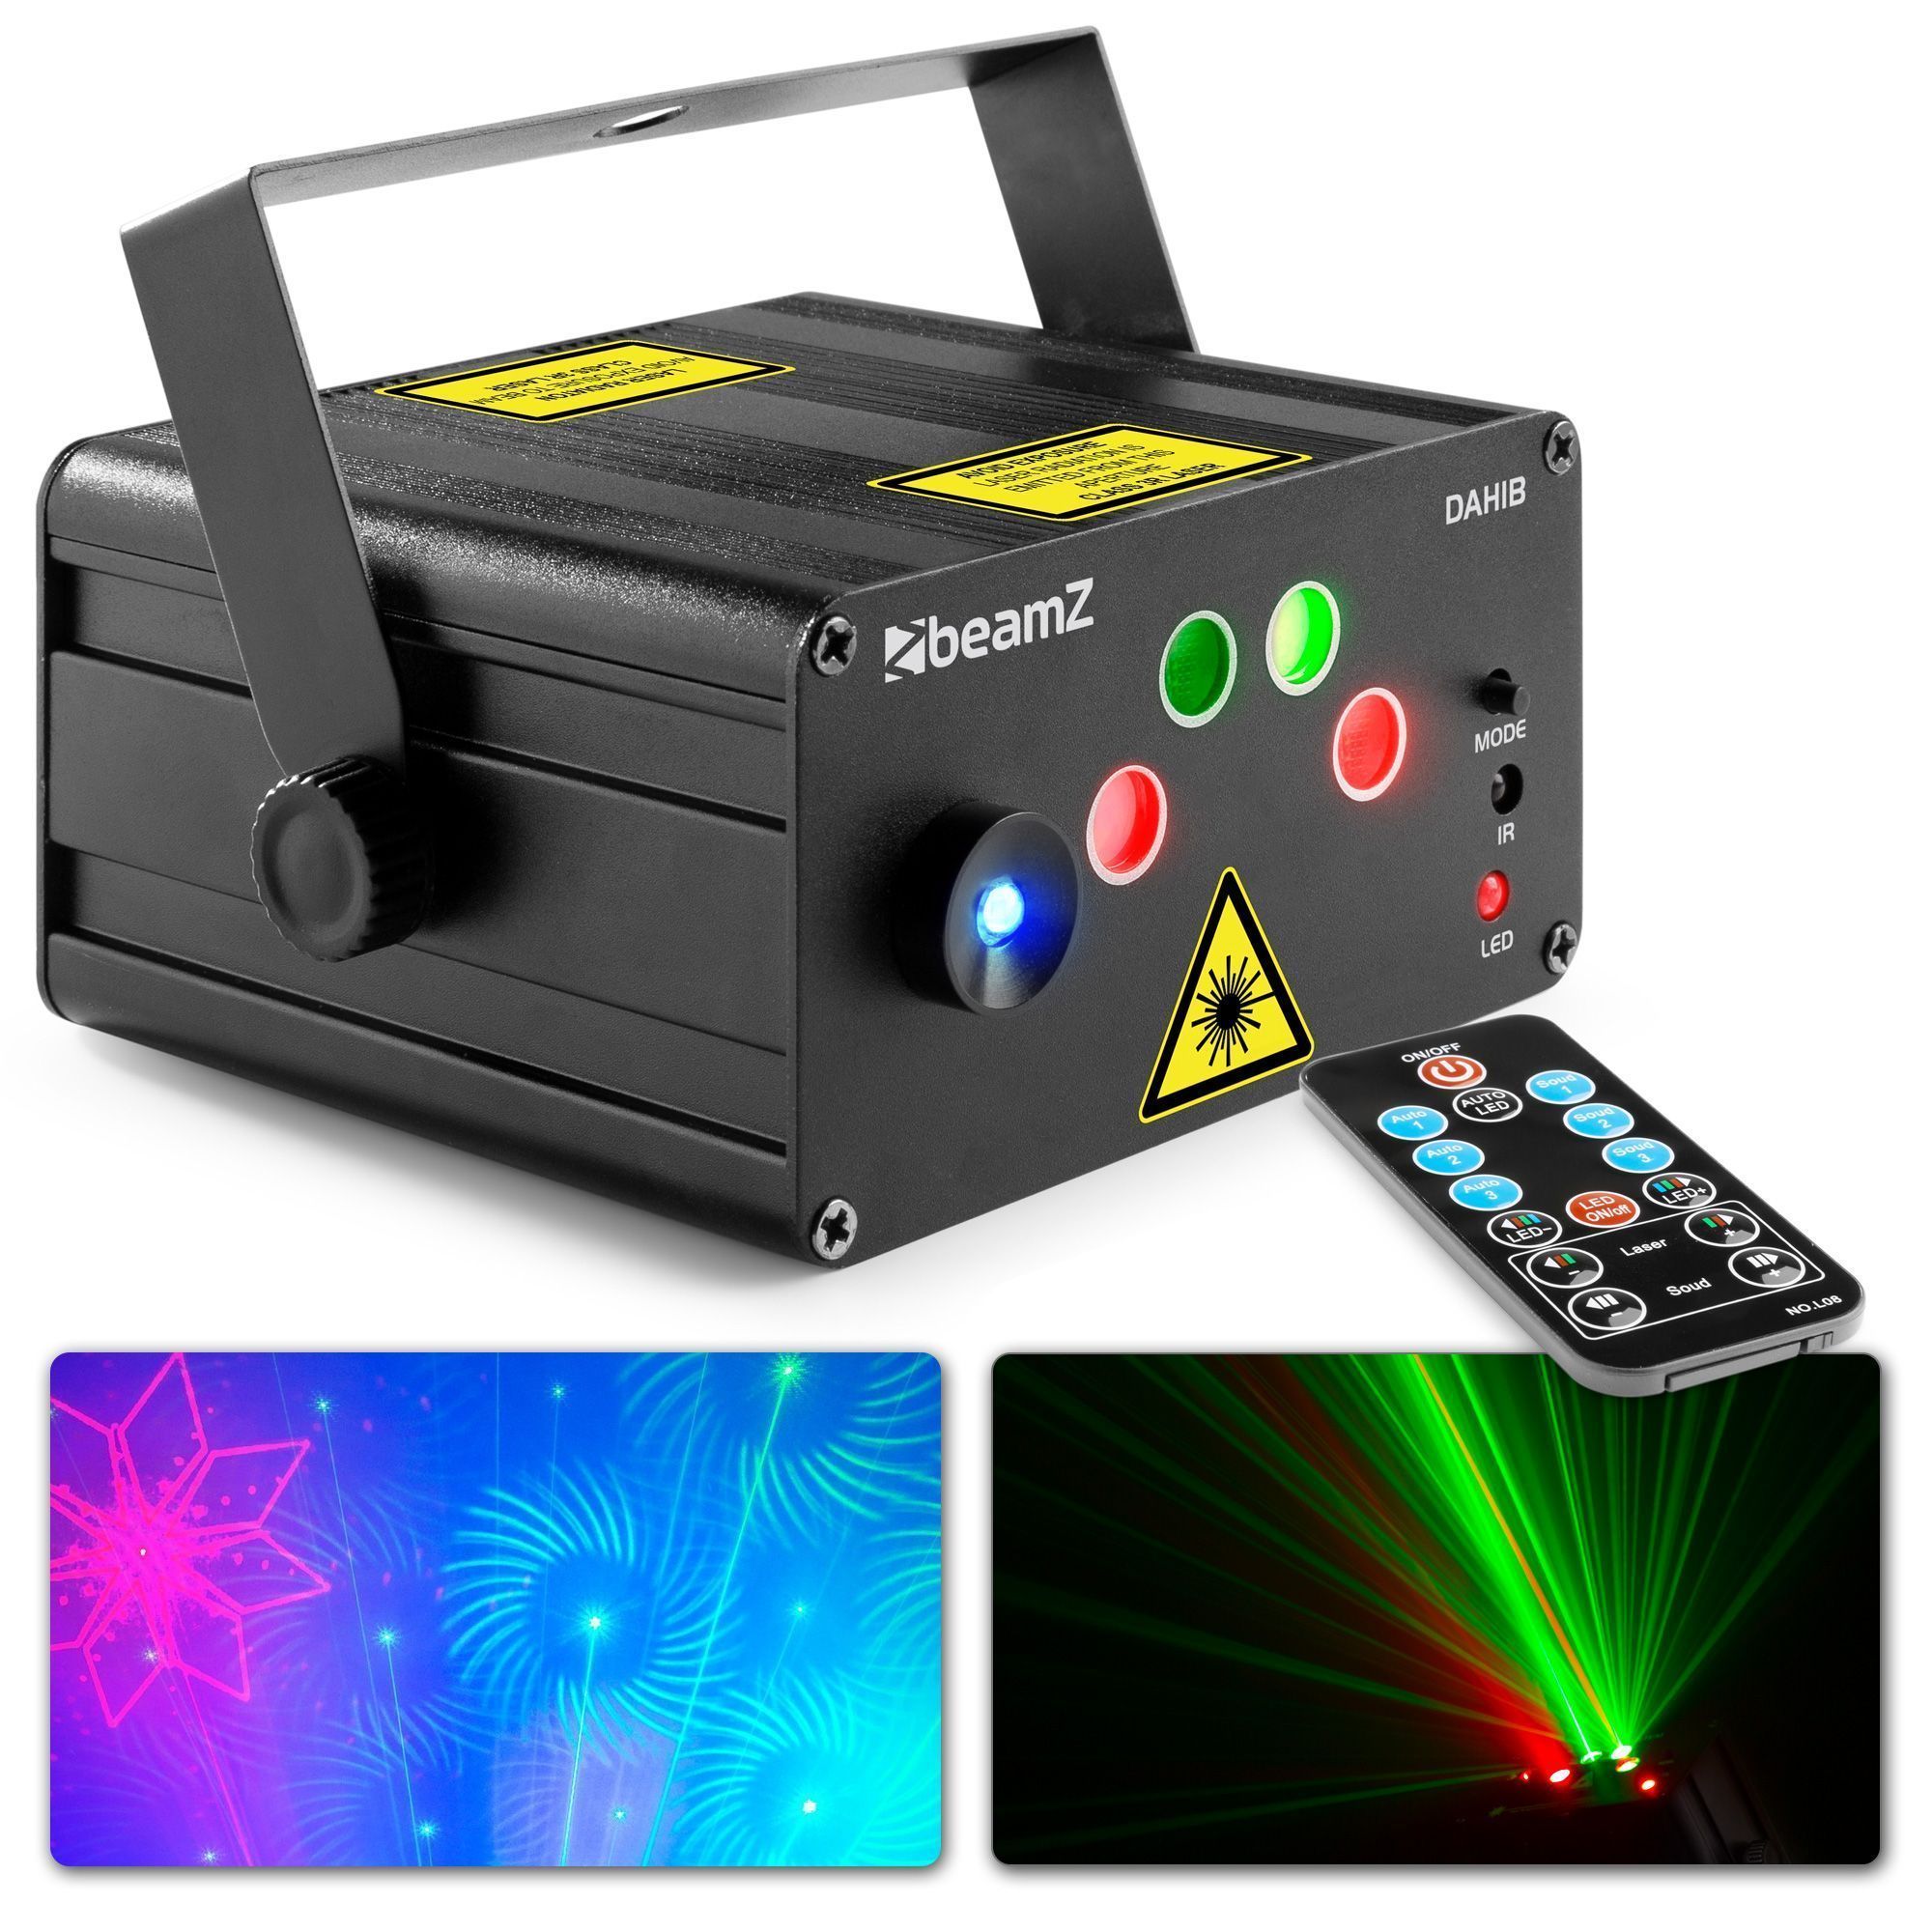 BeamZ Retourdeal -  Dahib disco laser met 2 lasers en felle blauwe LED